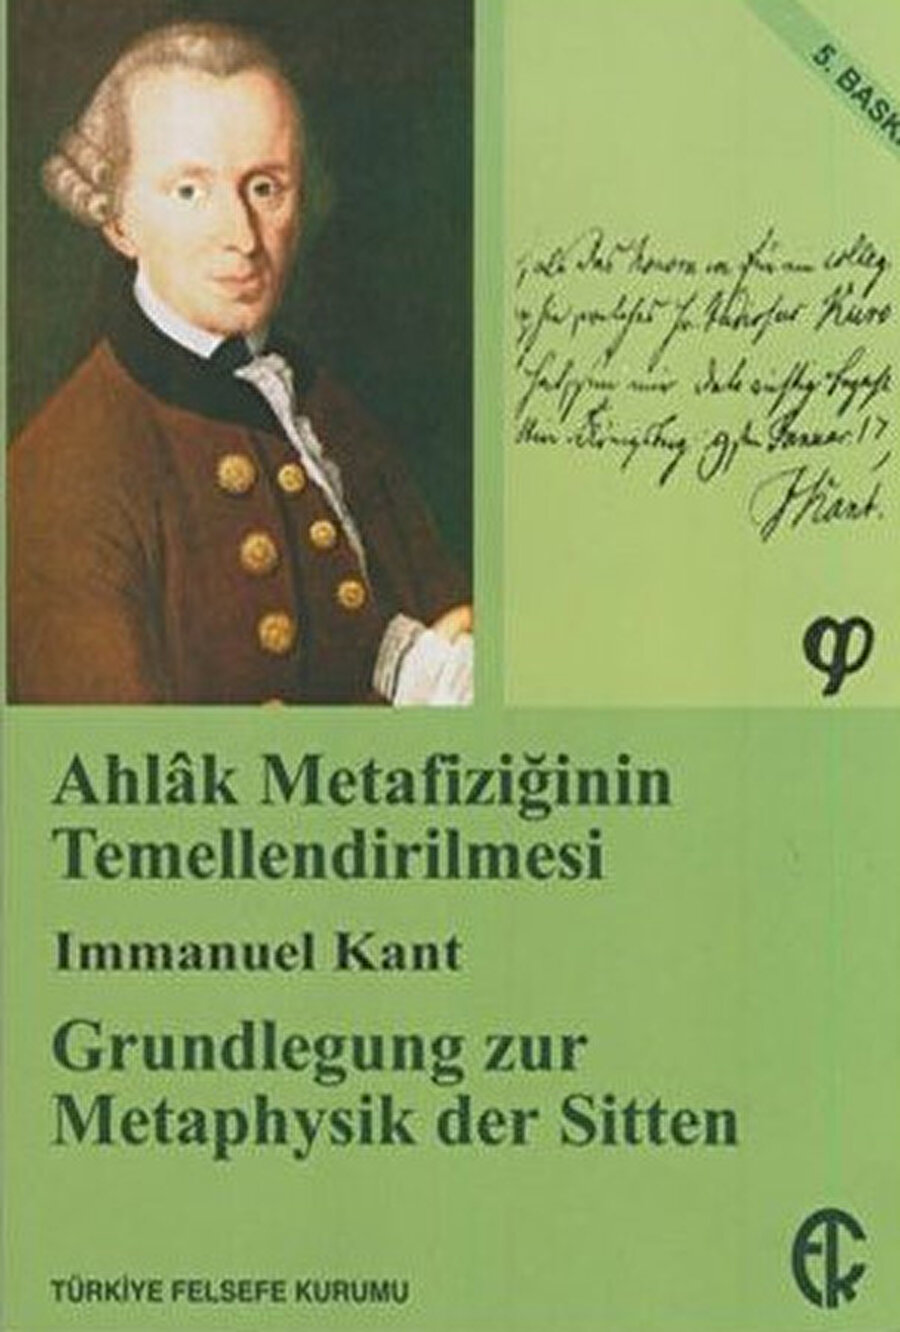 Ahlak Metafiziğinin Temellendirilmesi Immanuel Kant tarafından yazılan kitap.